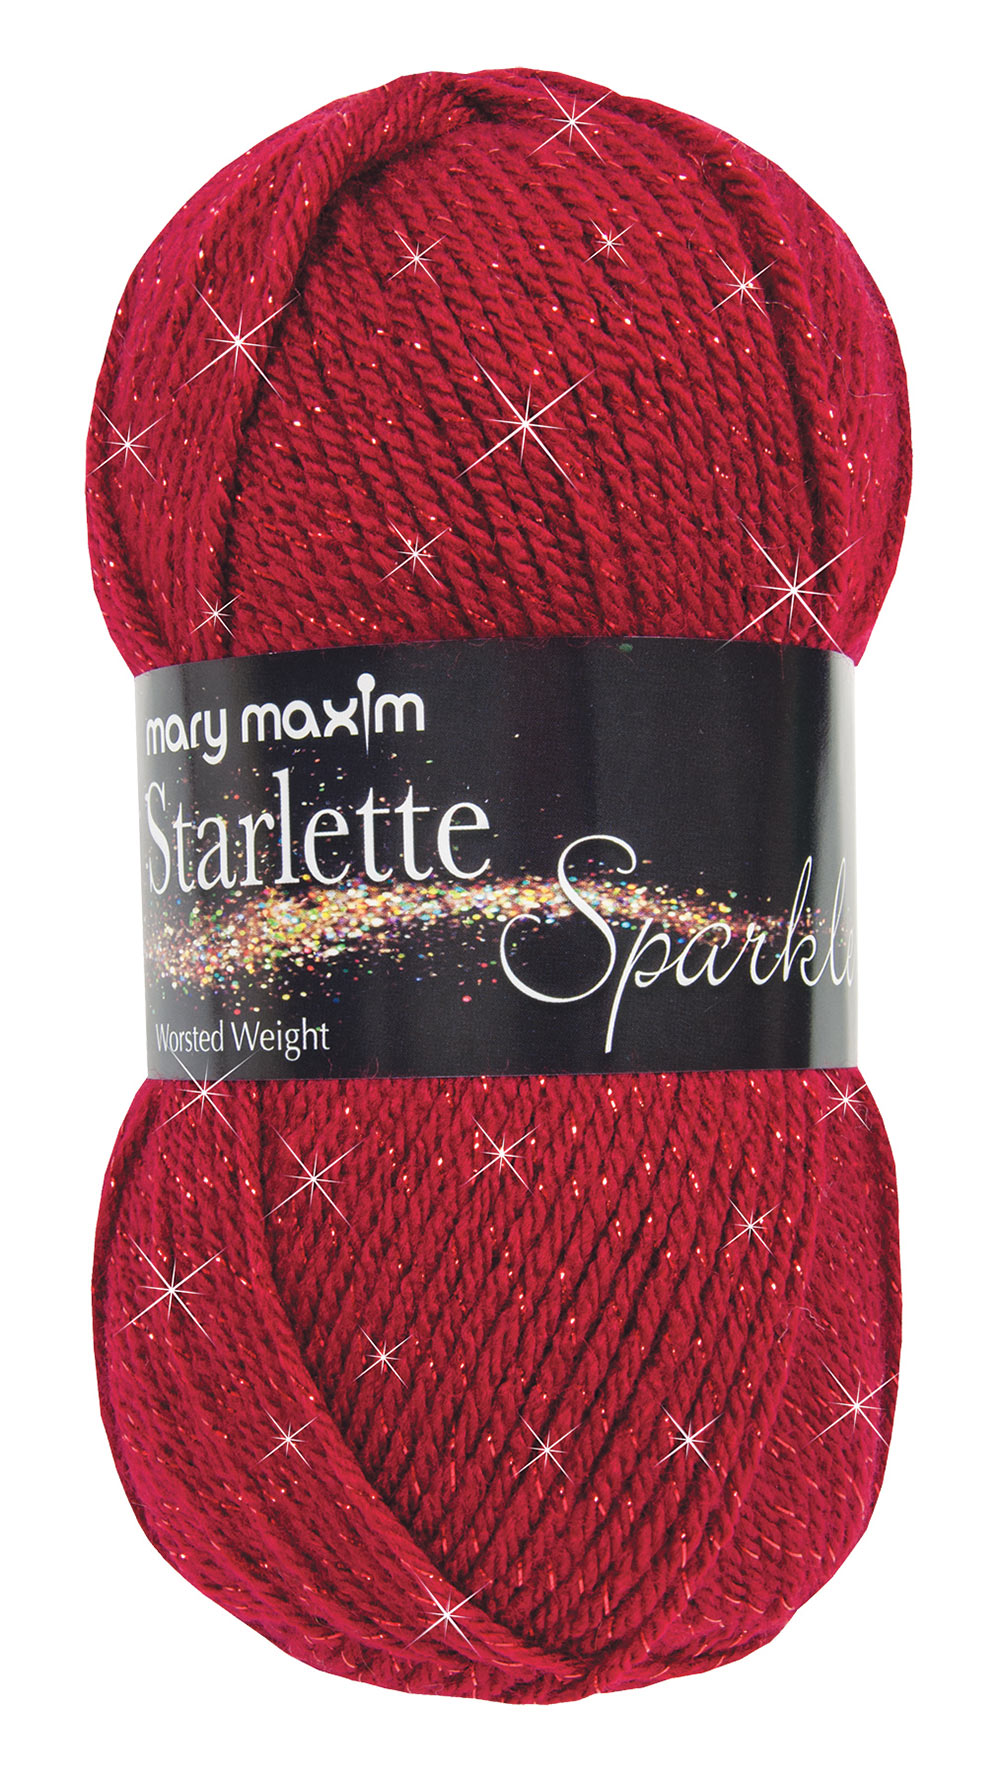 Starlette Sparkle Yarn